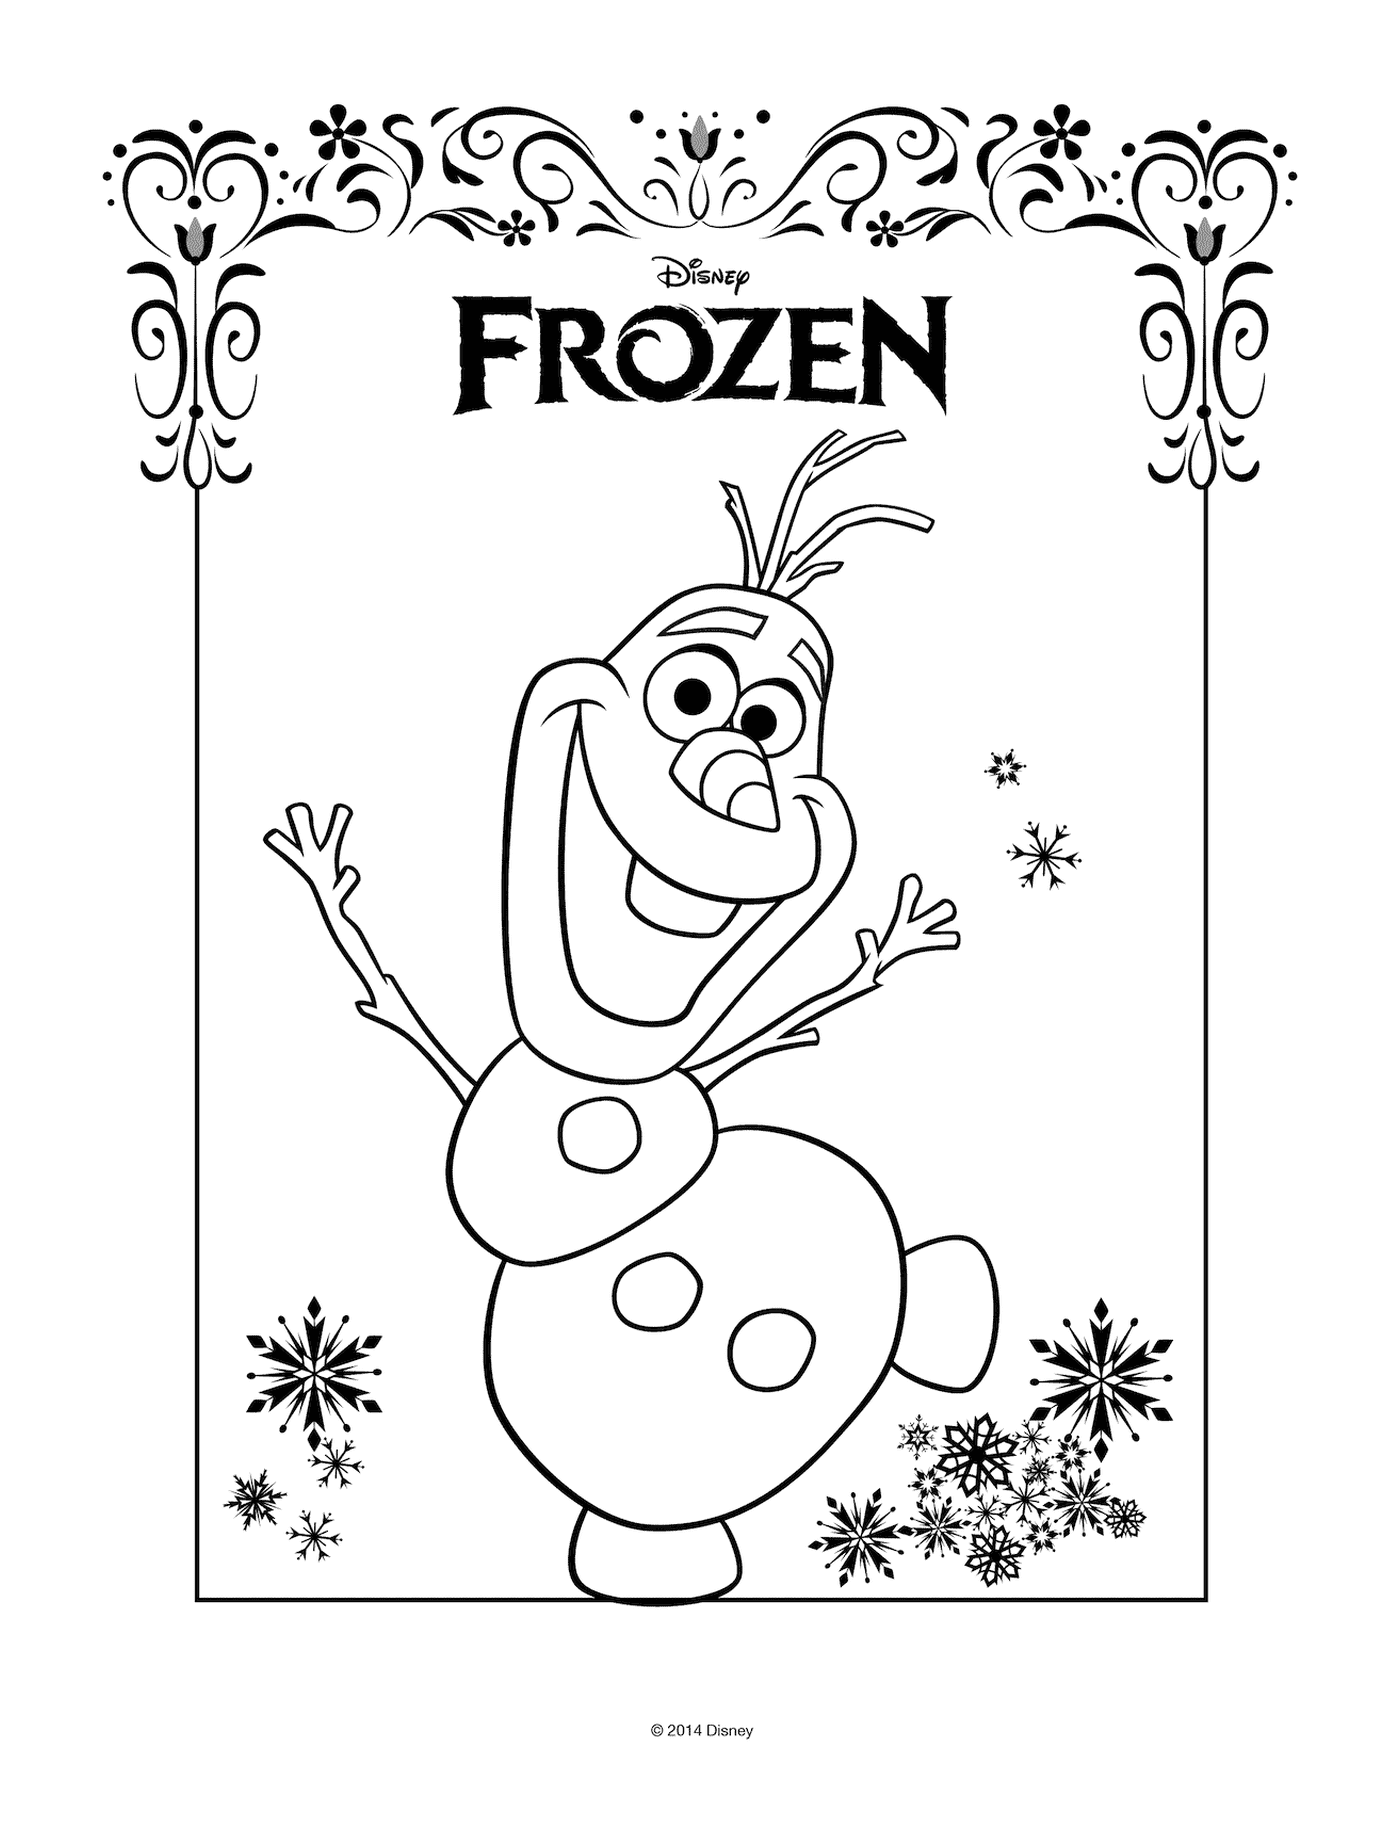  Олаф с замороженным логотипом Дисней 